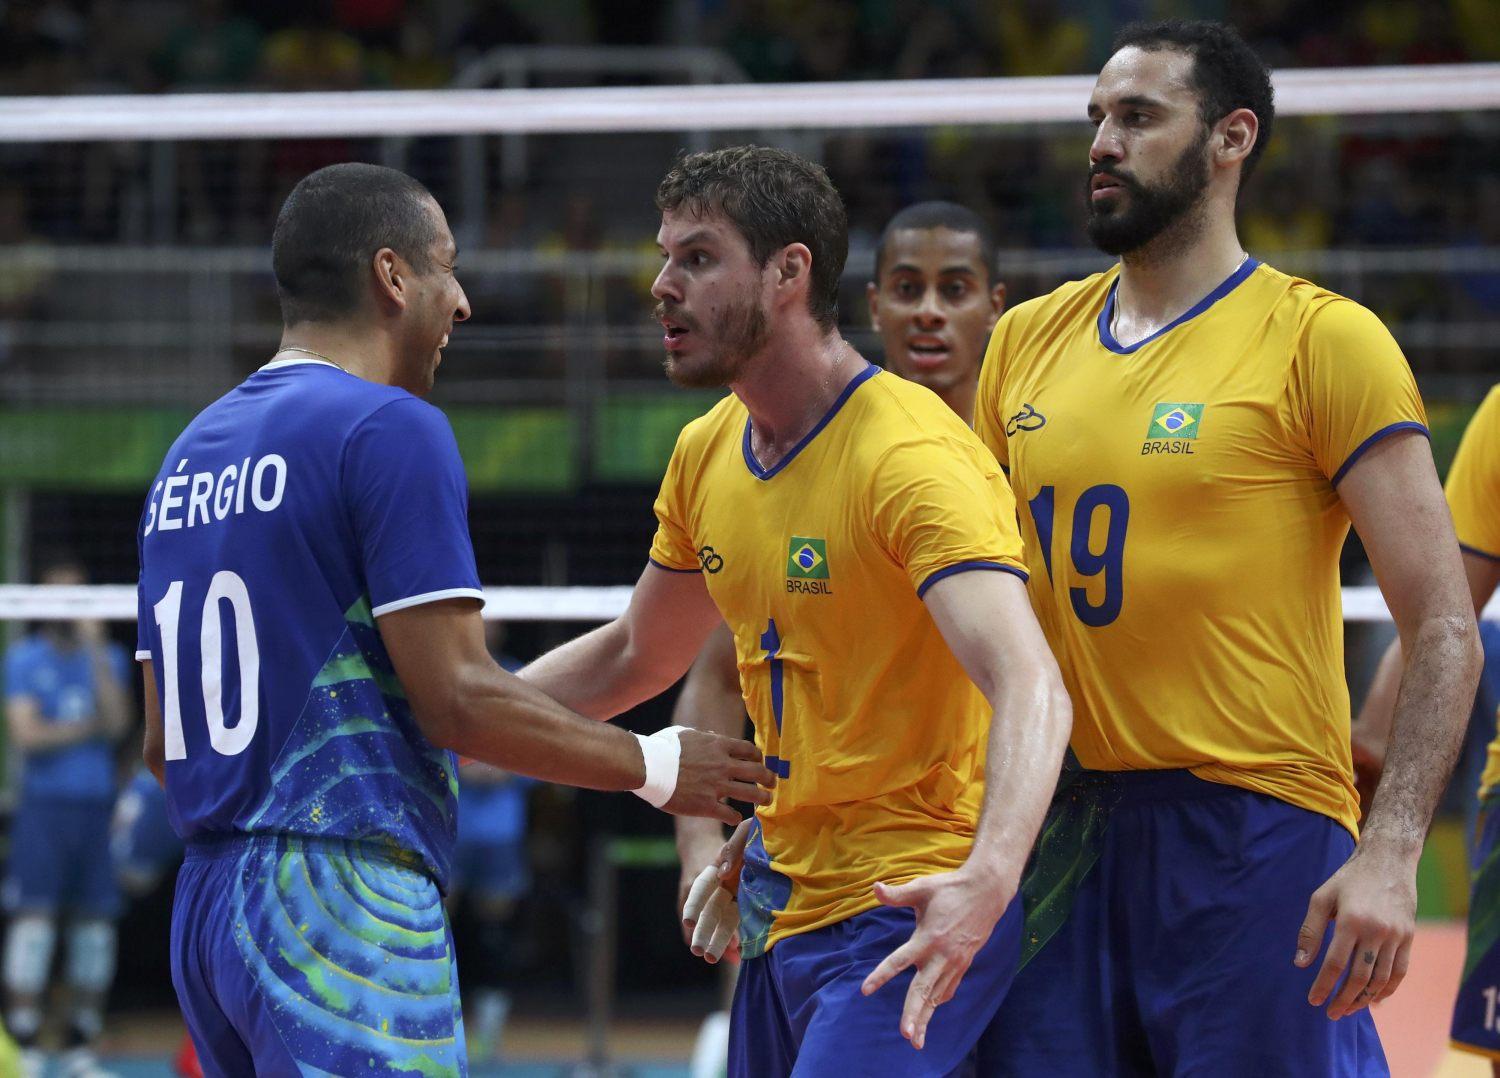 Mi van, mi van, mi van? - brazil és argentin kosarasok emberkednek a negyeddöntőben 